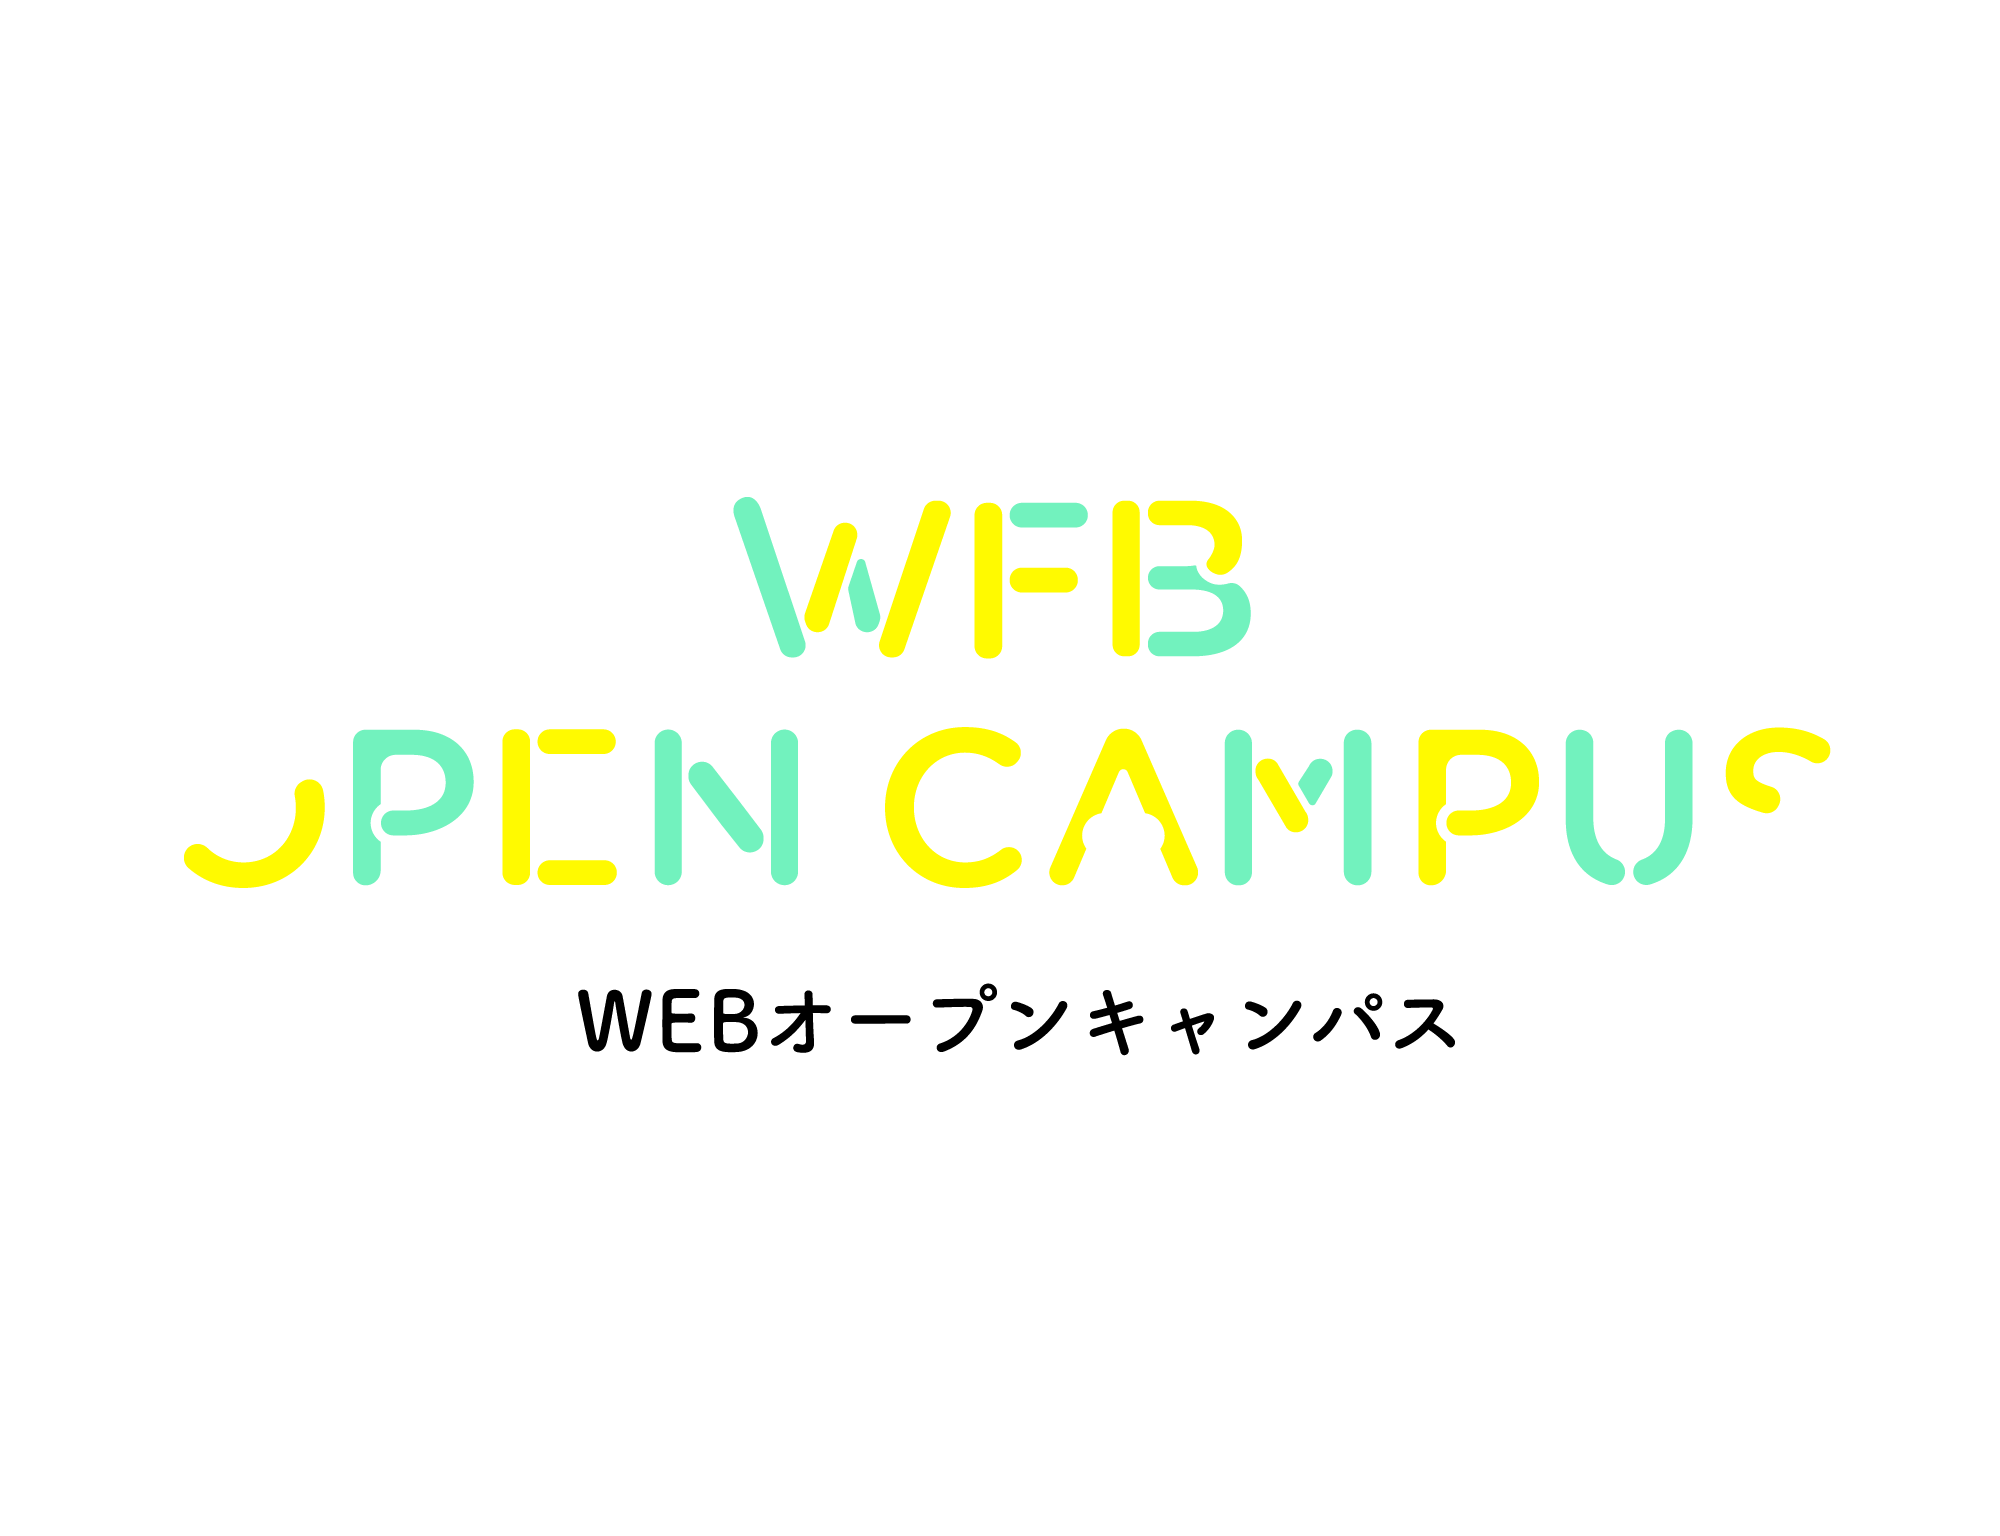 WEBオープンキャンパス。